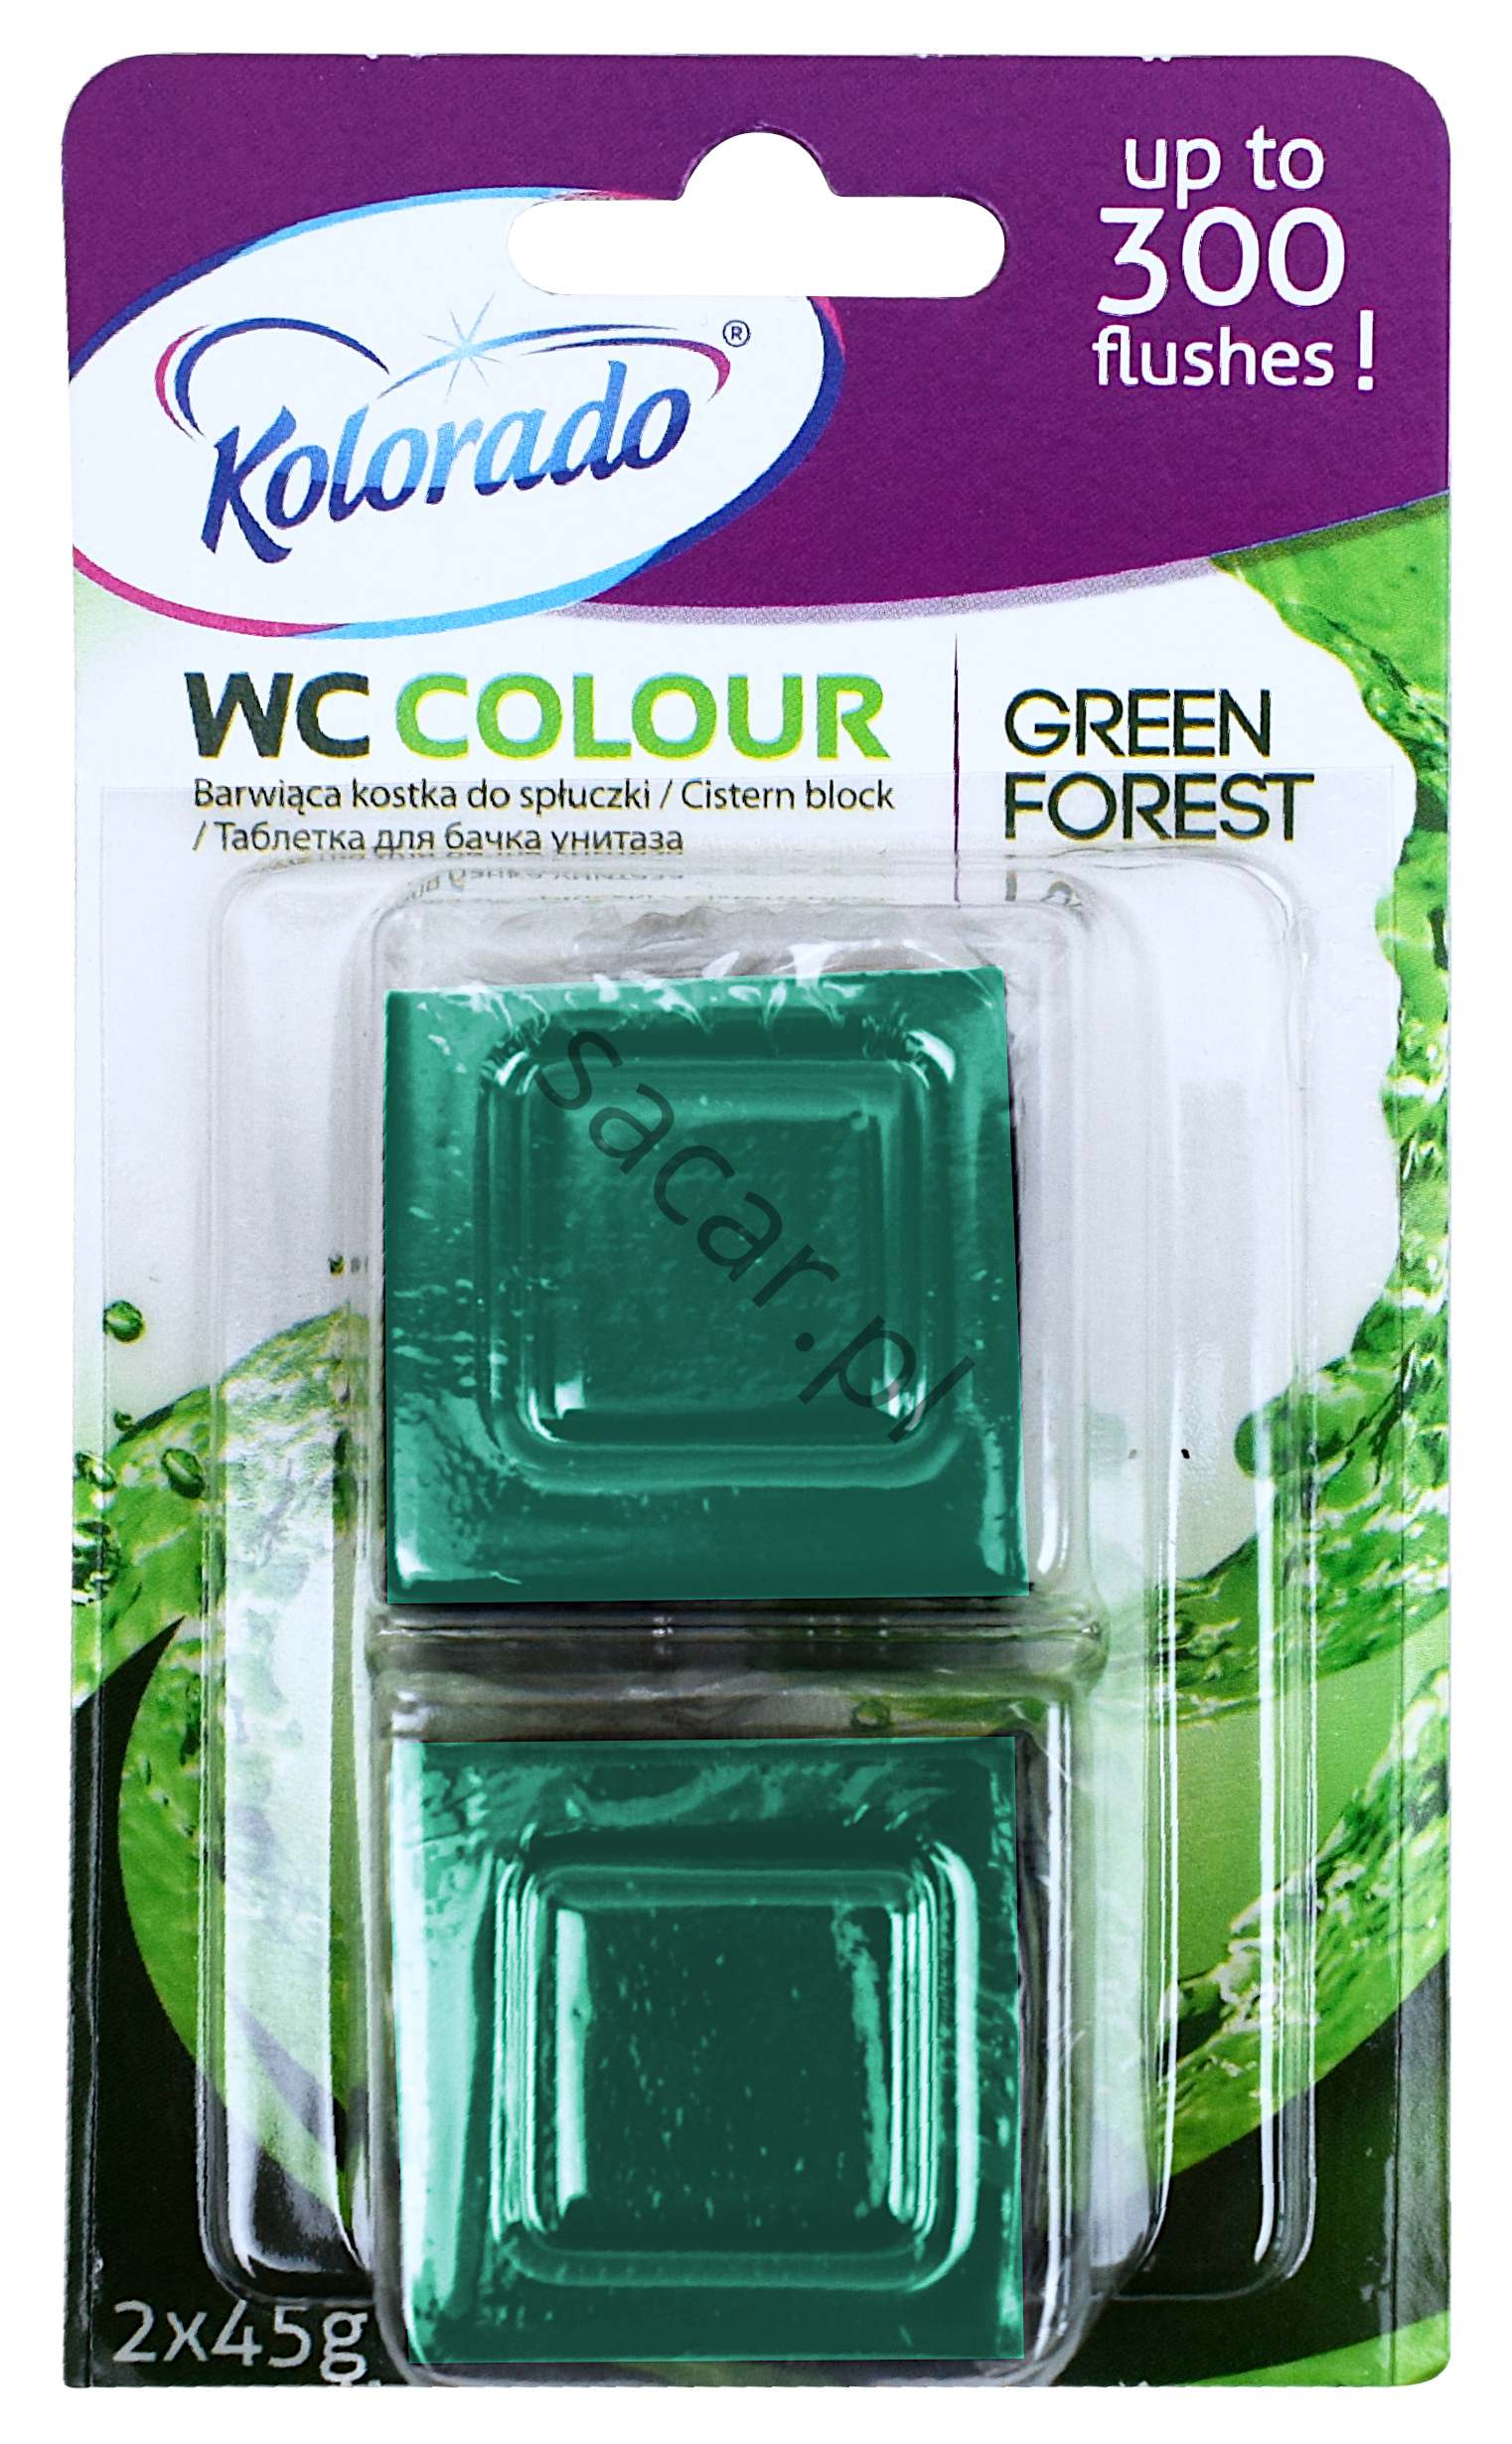 Kostka Kolorado WC Colour zielona 2x45g